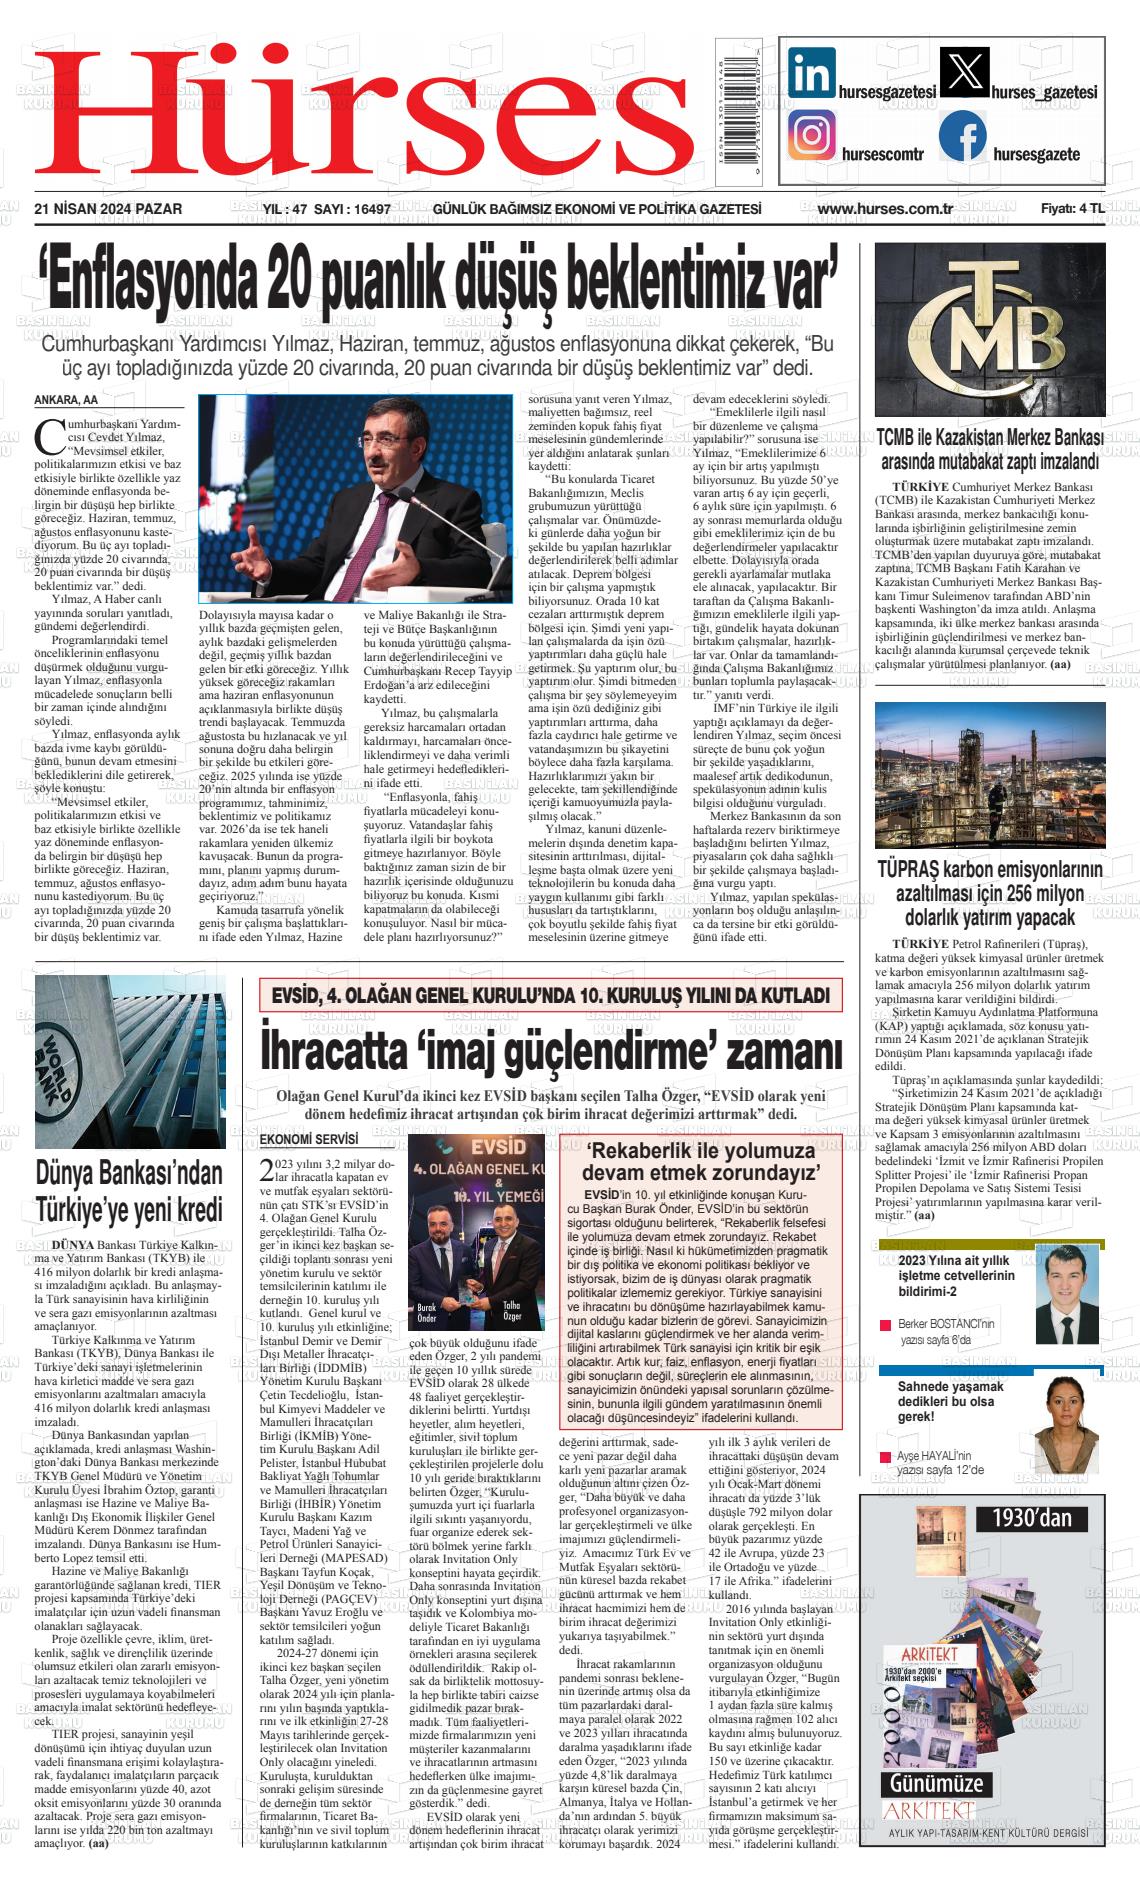 26 Nisan 2024 İstanbul Hürses gazetesi Gazete Manşeti